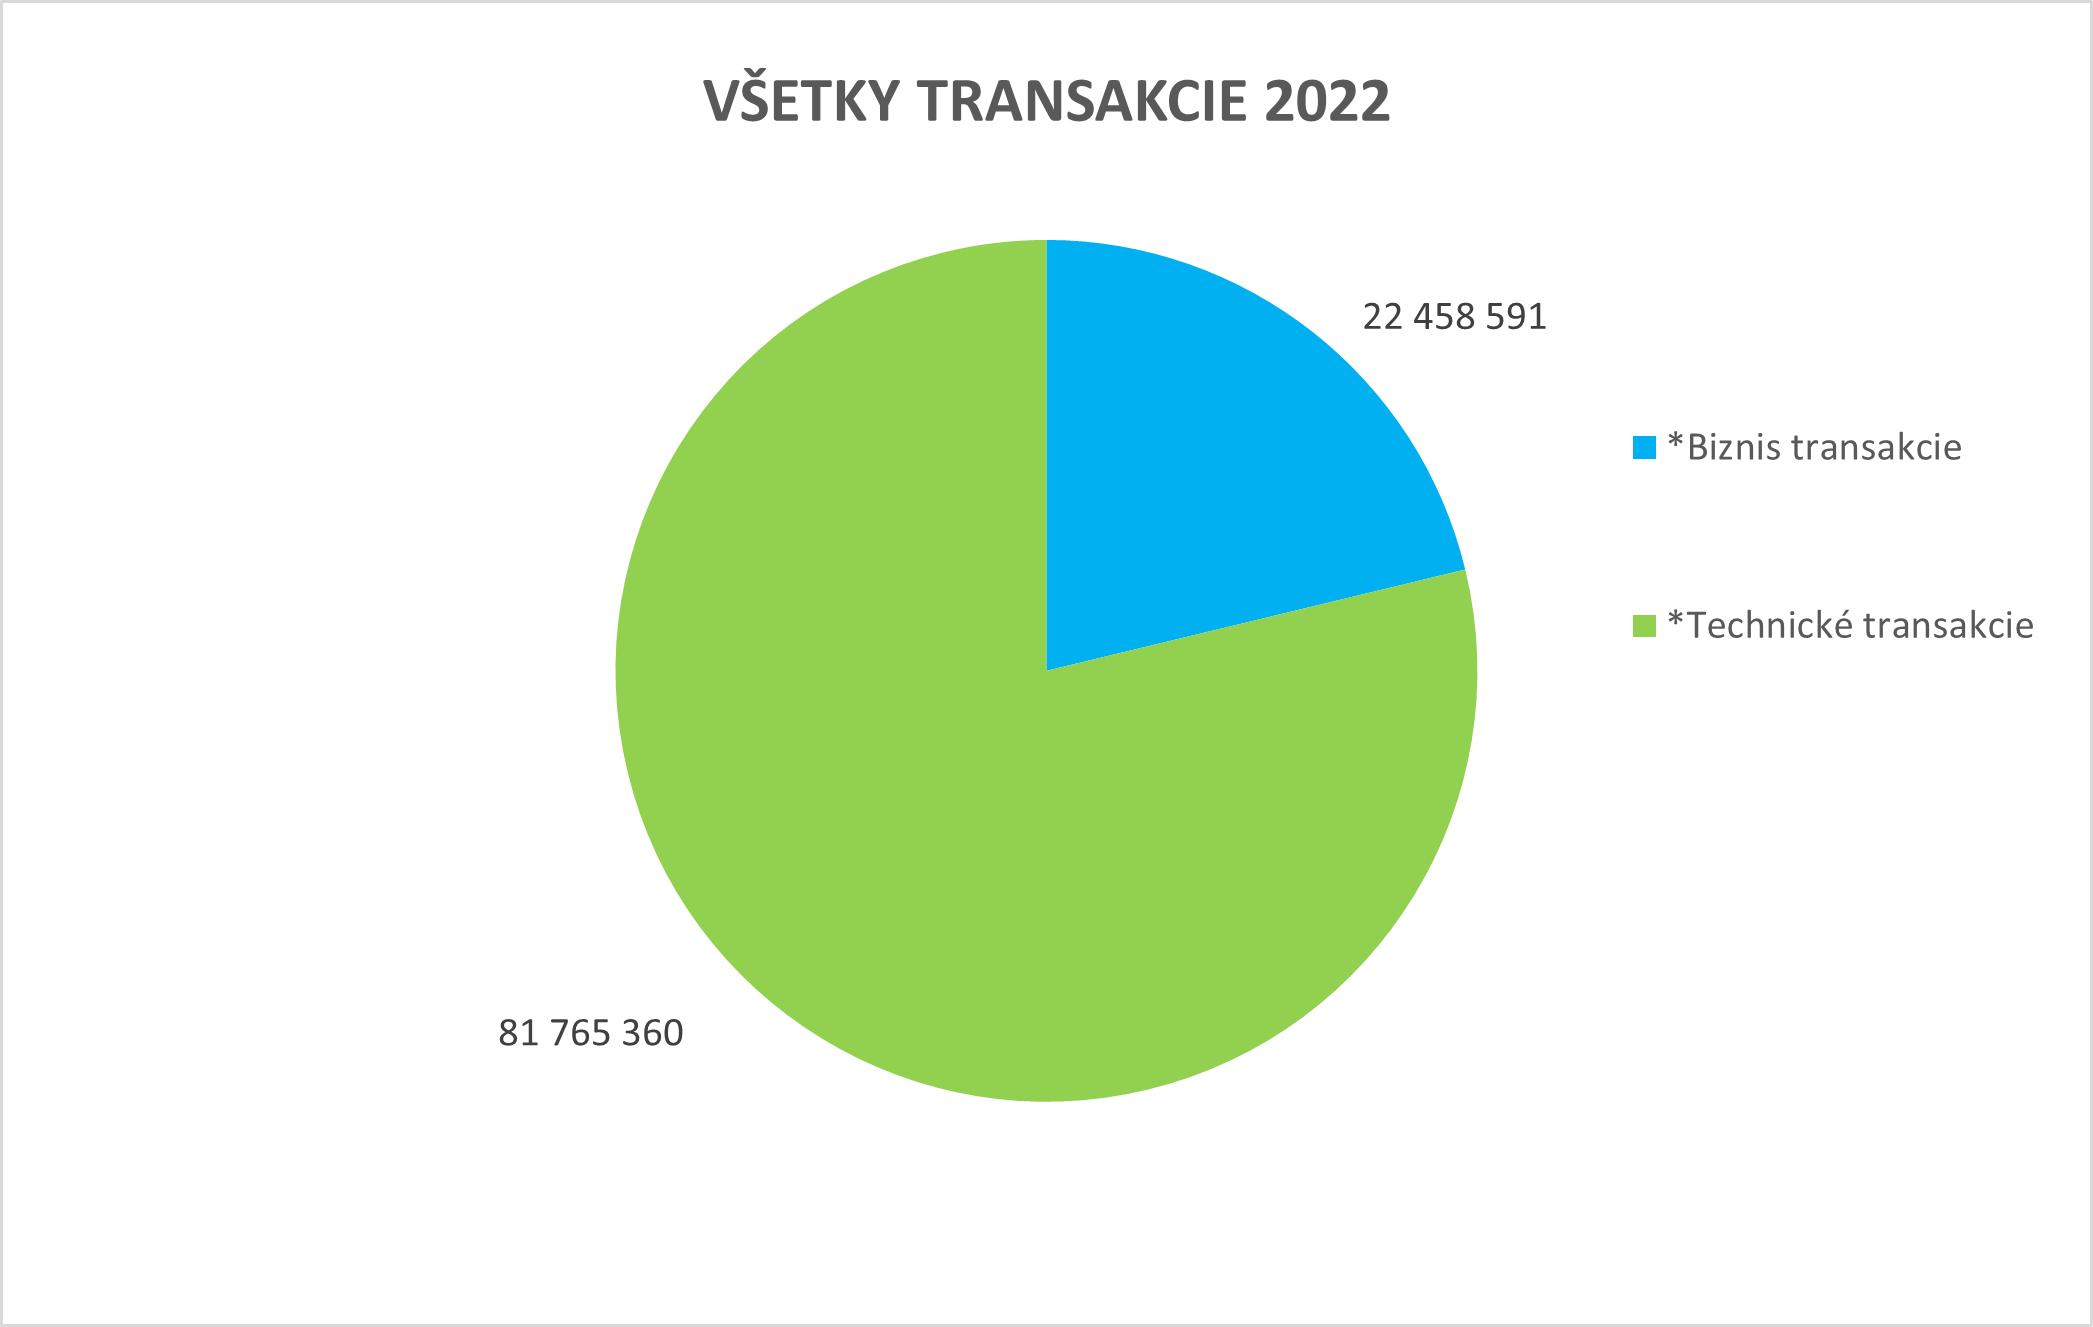 Ilustračný koláčový graf zobrazujúci všetky transakcie za rok 2022.